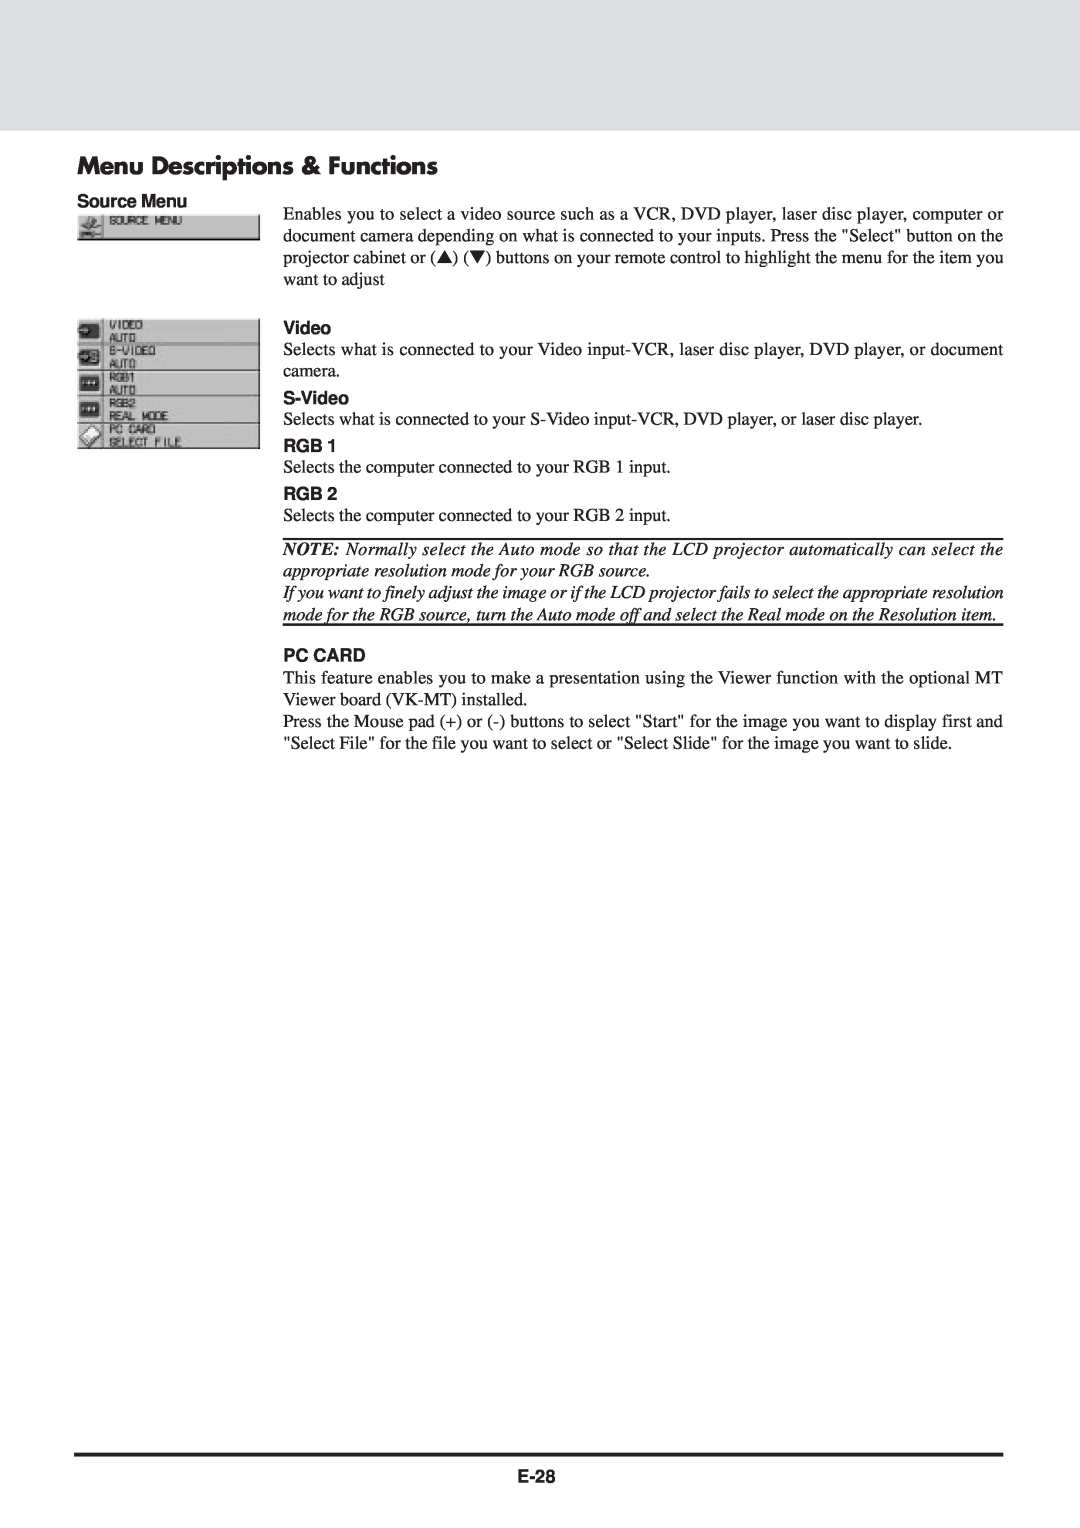 NEC MT830 user manual Menu Descriptions & Functions, Source Menu, S-Video, Pc Card, E-28 